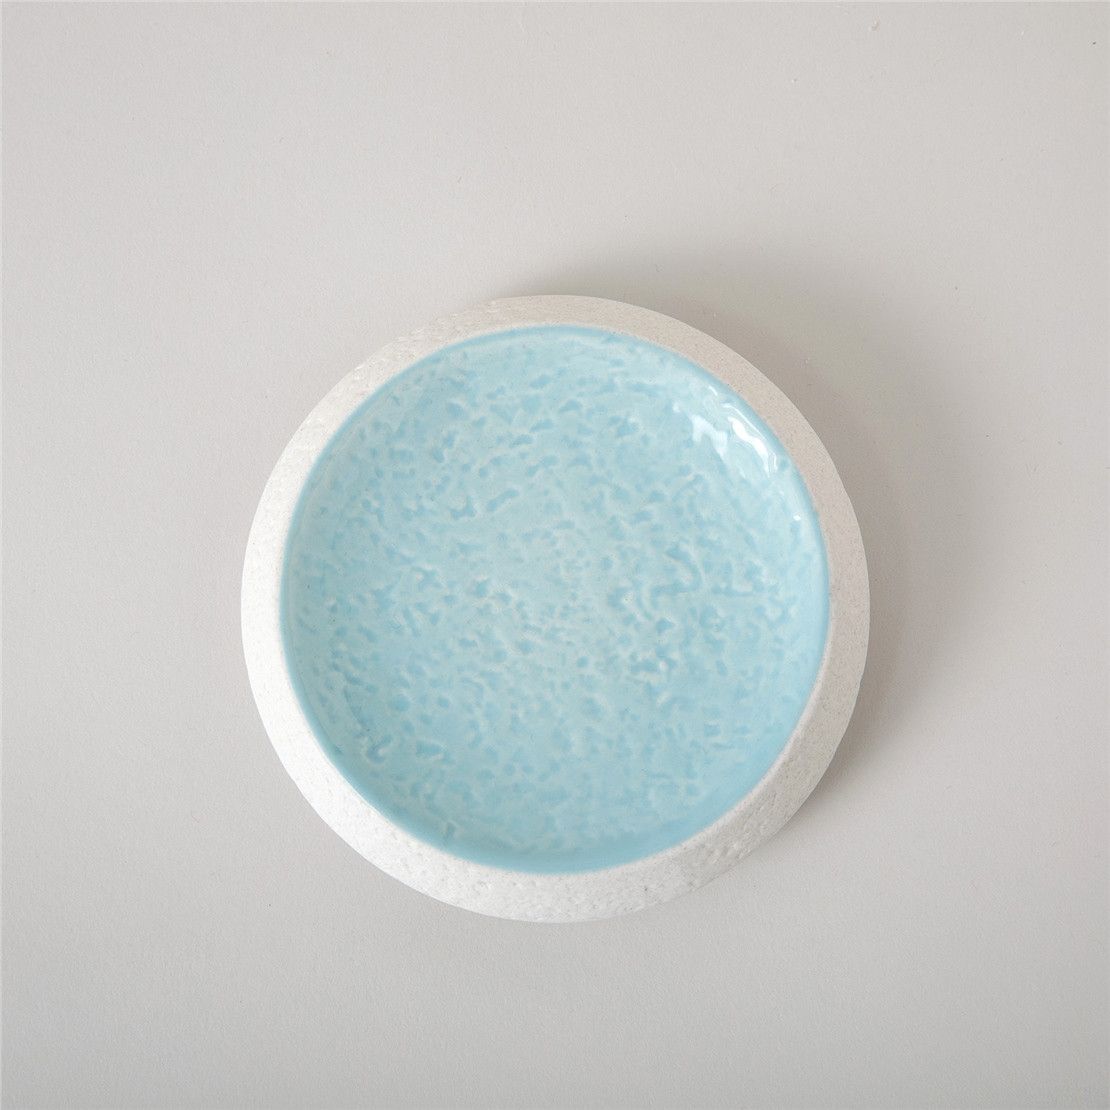 Керамический набор аксессуаров для ванной SANTORINI, 5 предметов, бело-голубой